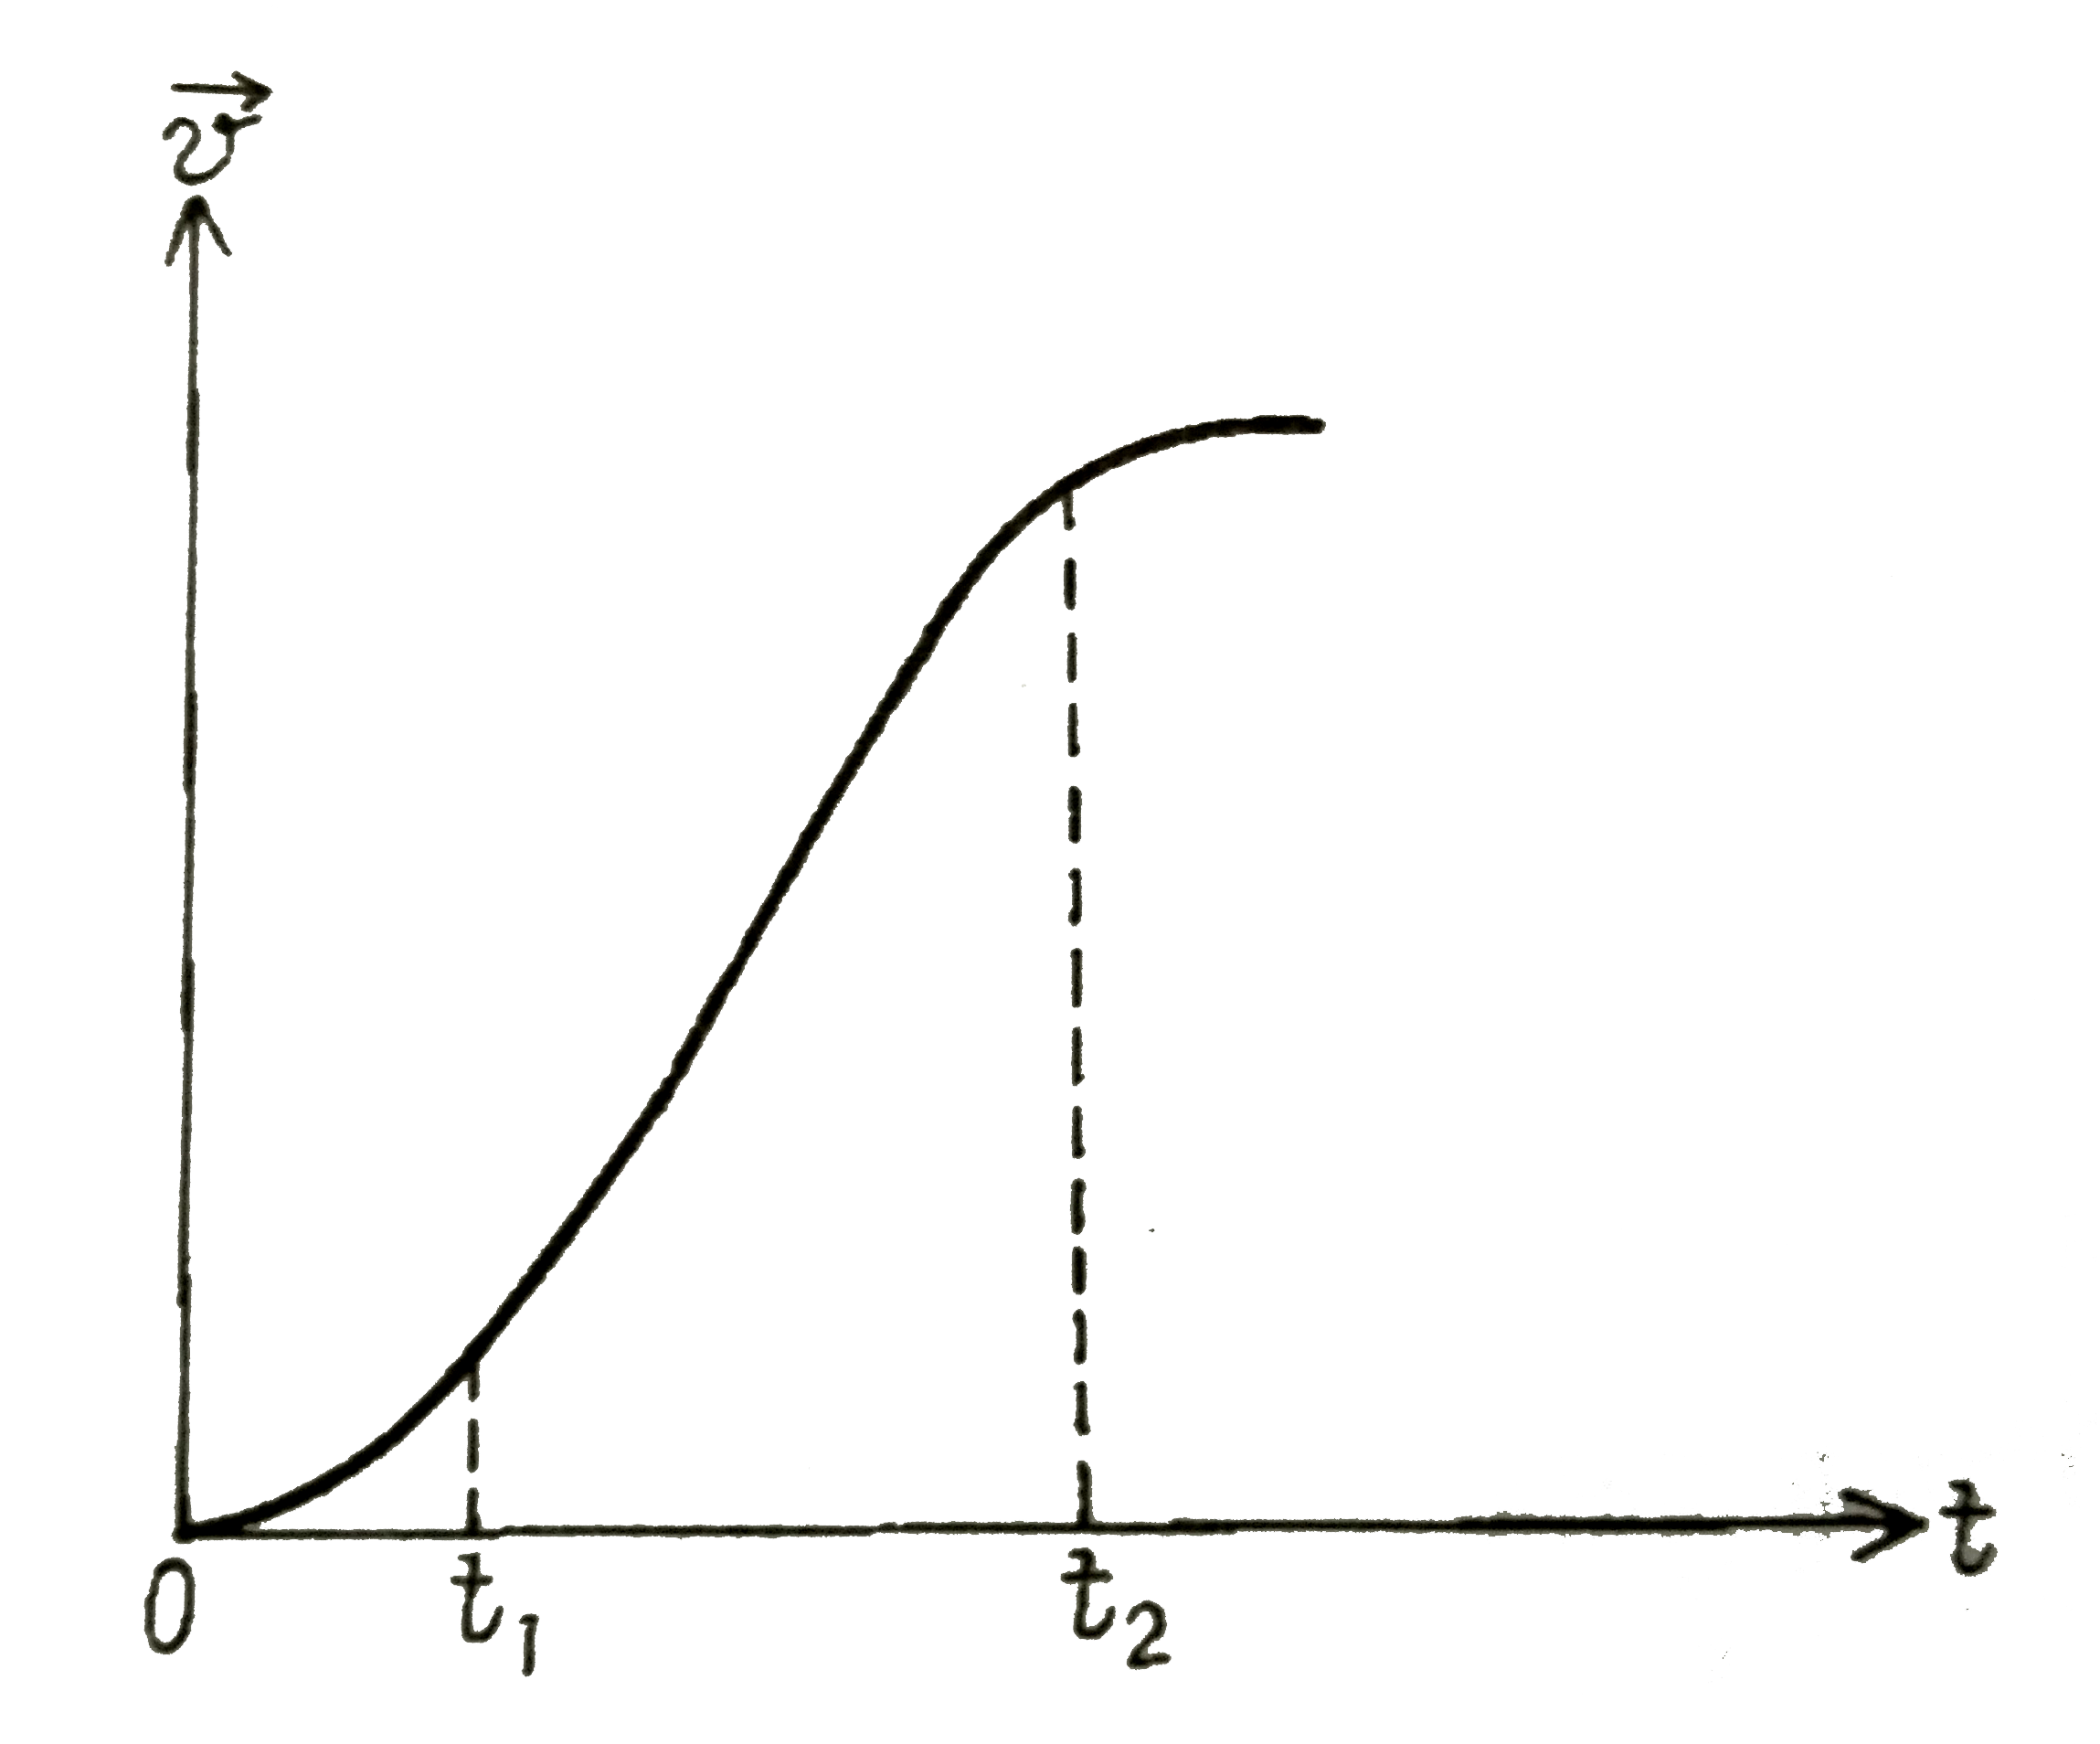 एकविमीय गति में किसी कण का वेग-समय ग्राफ चित्र में दिखाया गया है :       नीचे दिए सूत्रों में  t(1) से t(2) तक के समय-अन्तराल की अवधि में कण की गति का वर्णन  करने के लिए कौन -से सूत्र सही है ?    (a) x(t(2)) = x(t(1)) + v(t(1)) (t(2) - t(1)) + (1//2)a(t(2) - t(1))^(2)   (b) v(t(2)) = v(t(1)) + a(t(2) - t(1))   (c) v(